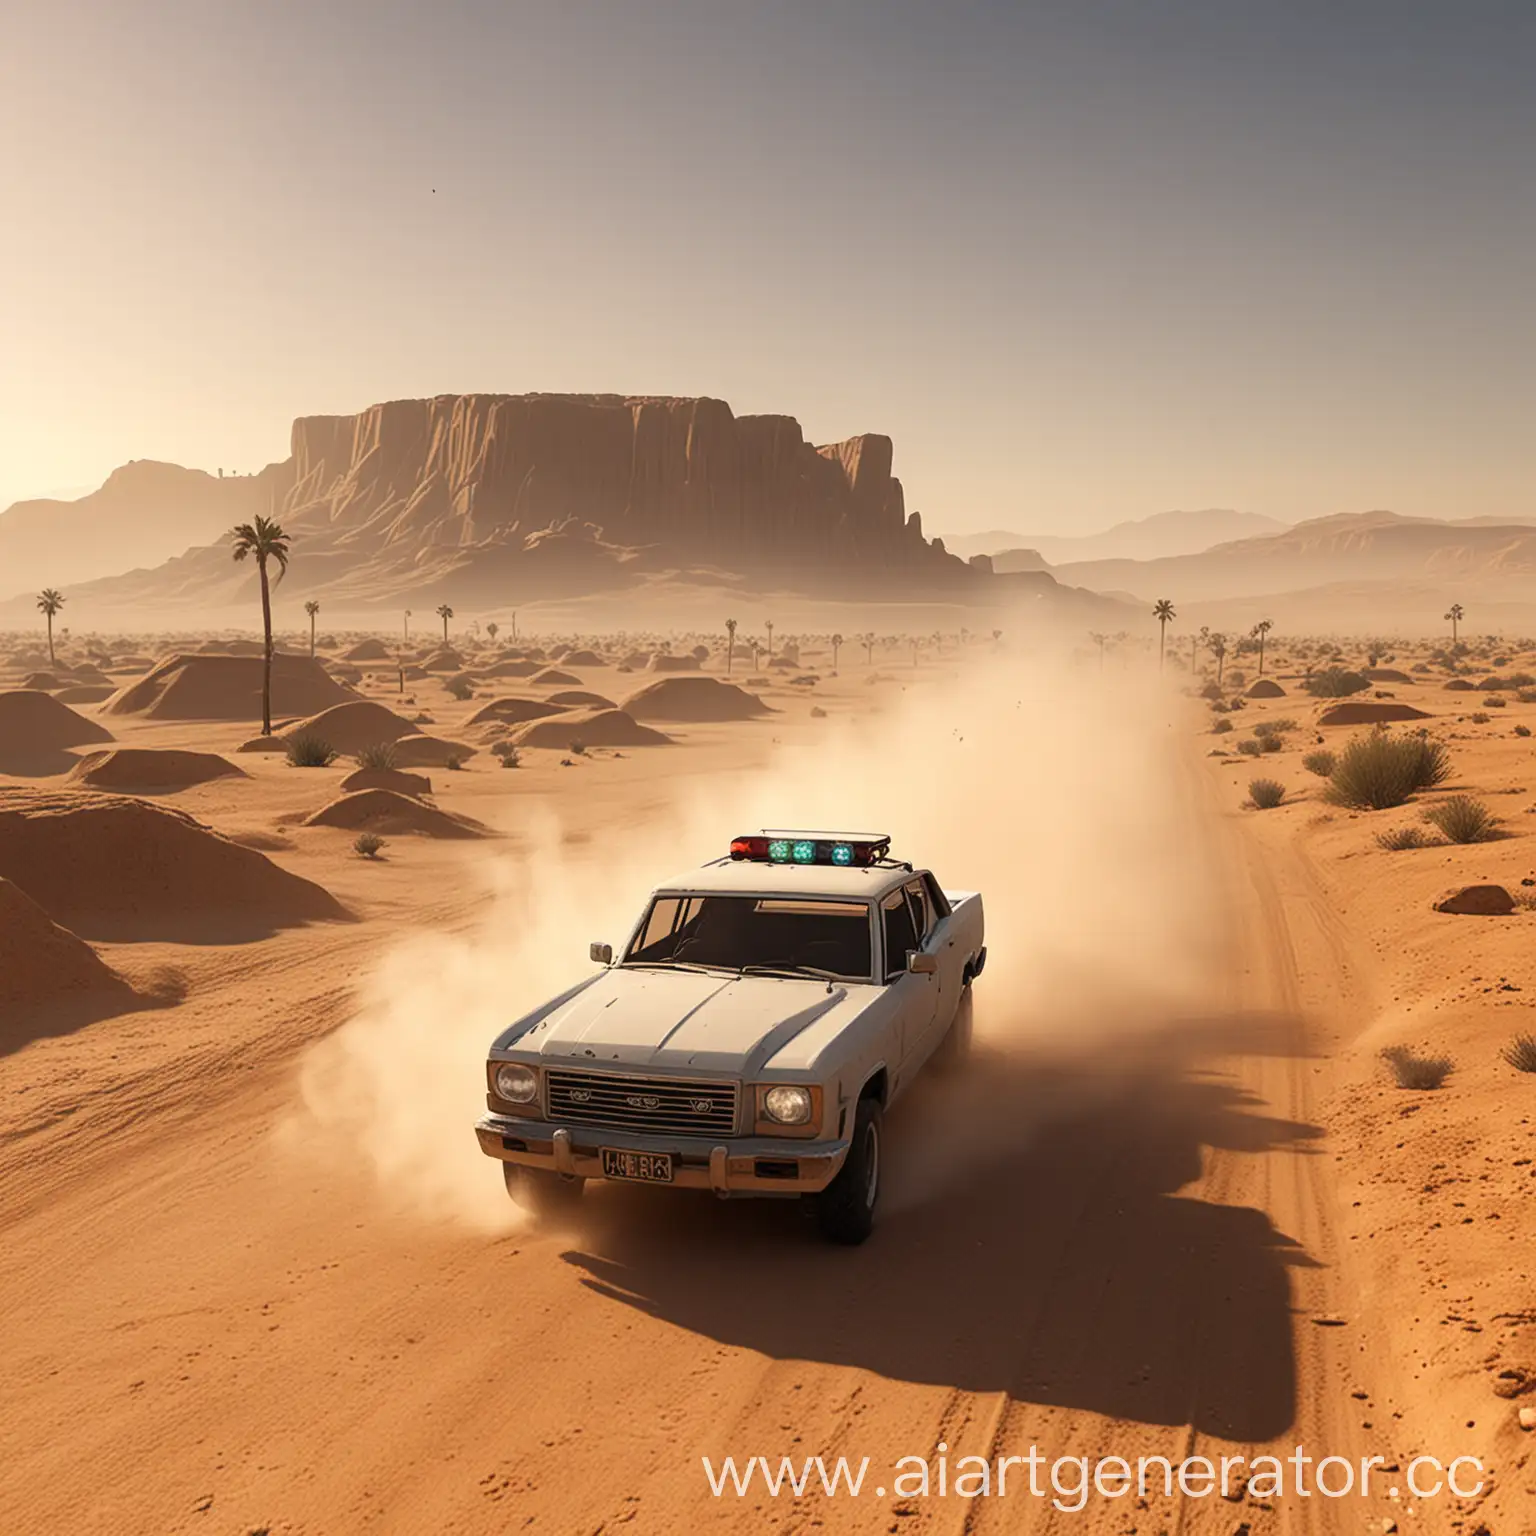 Пыльная поездка в пустыне на машине в стиле роблокс
